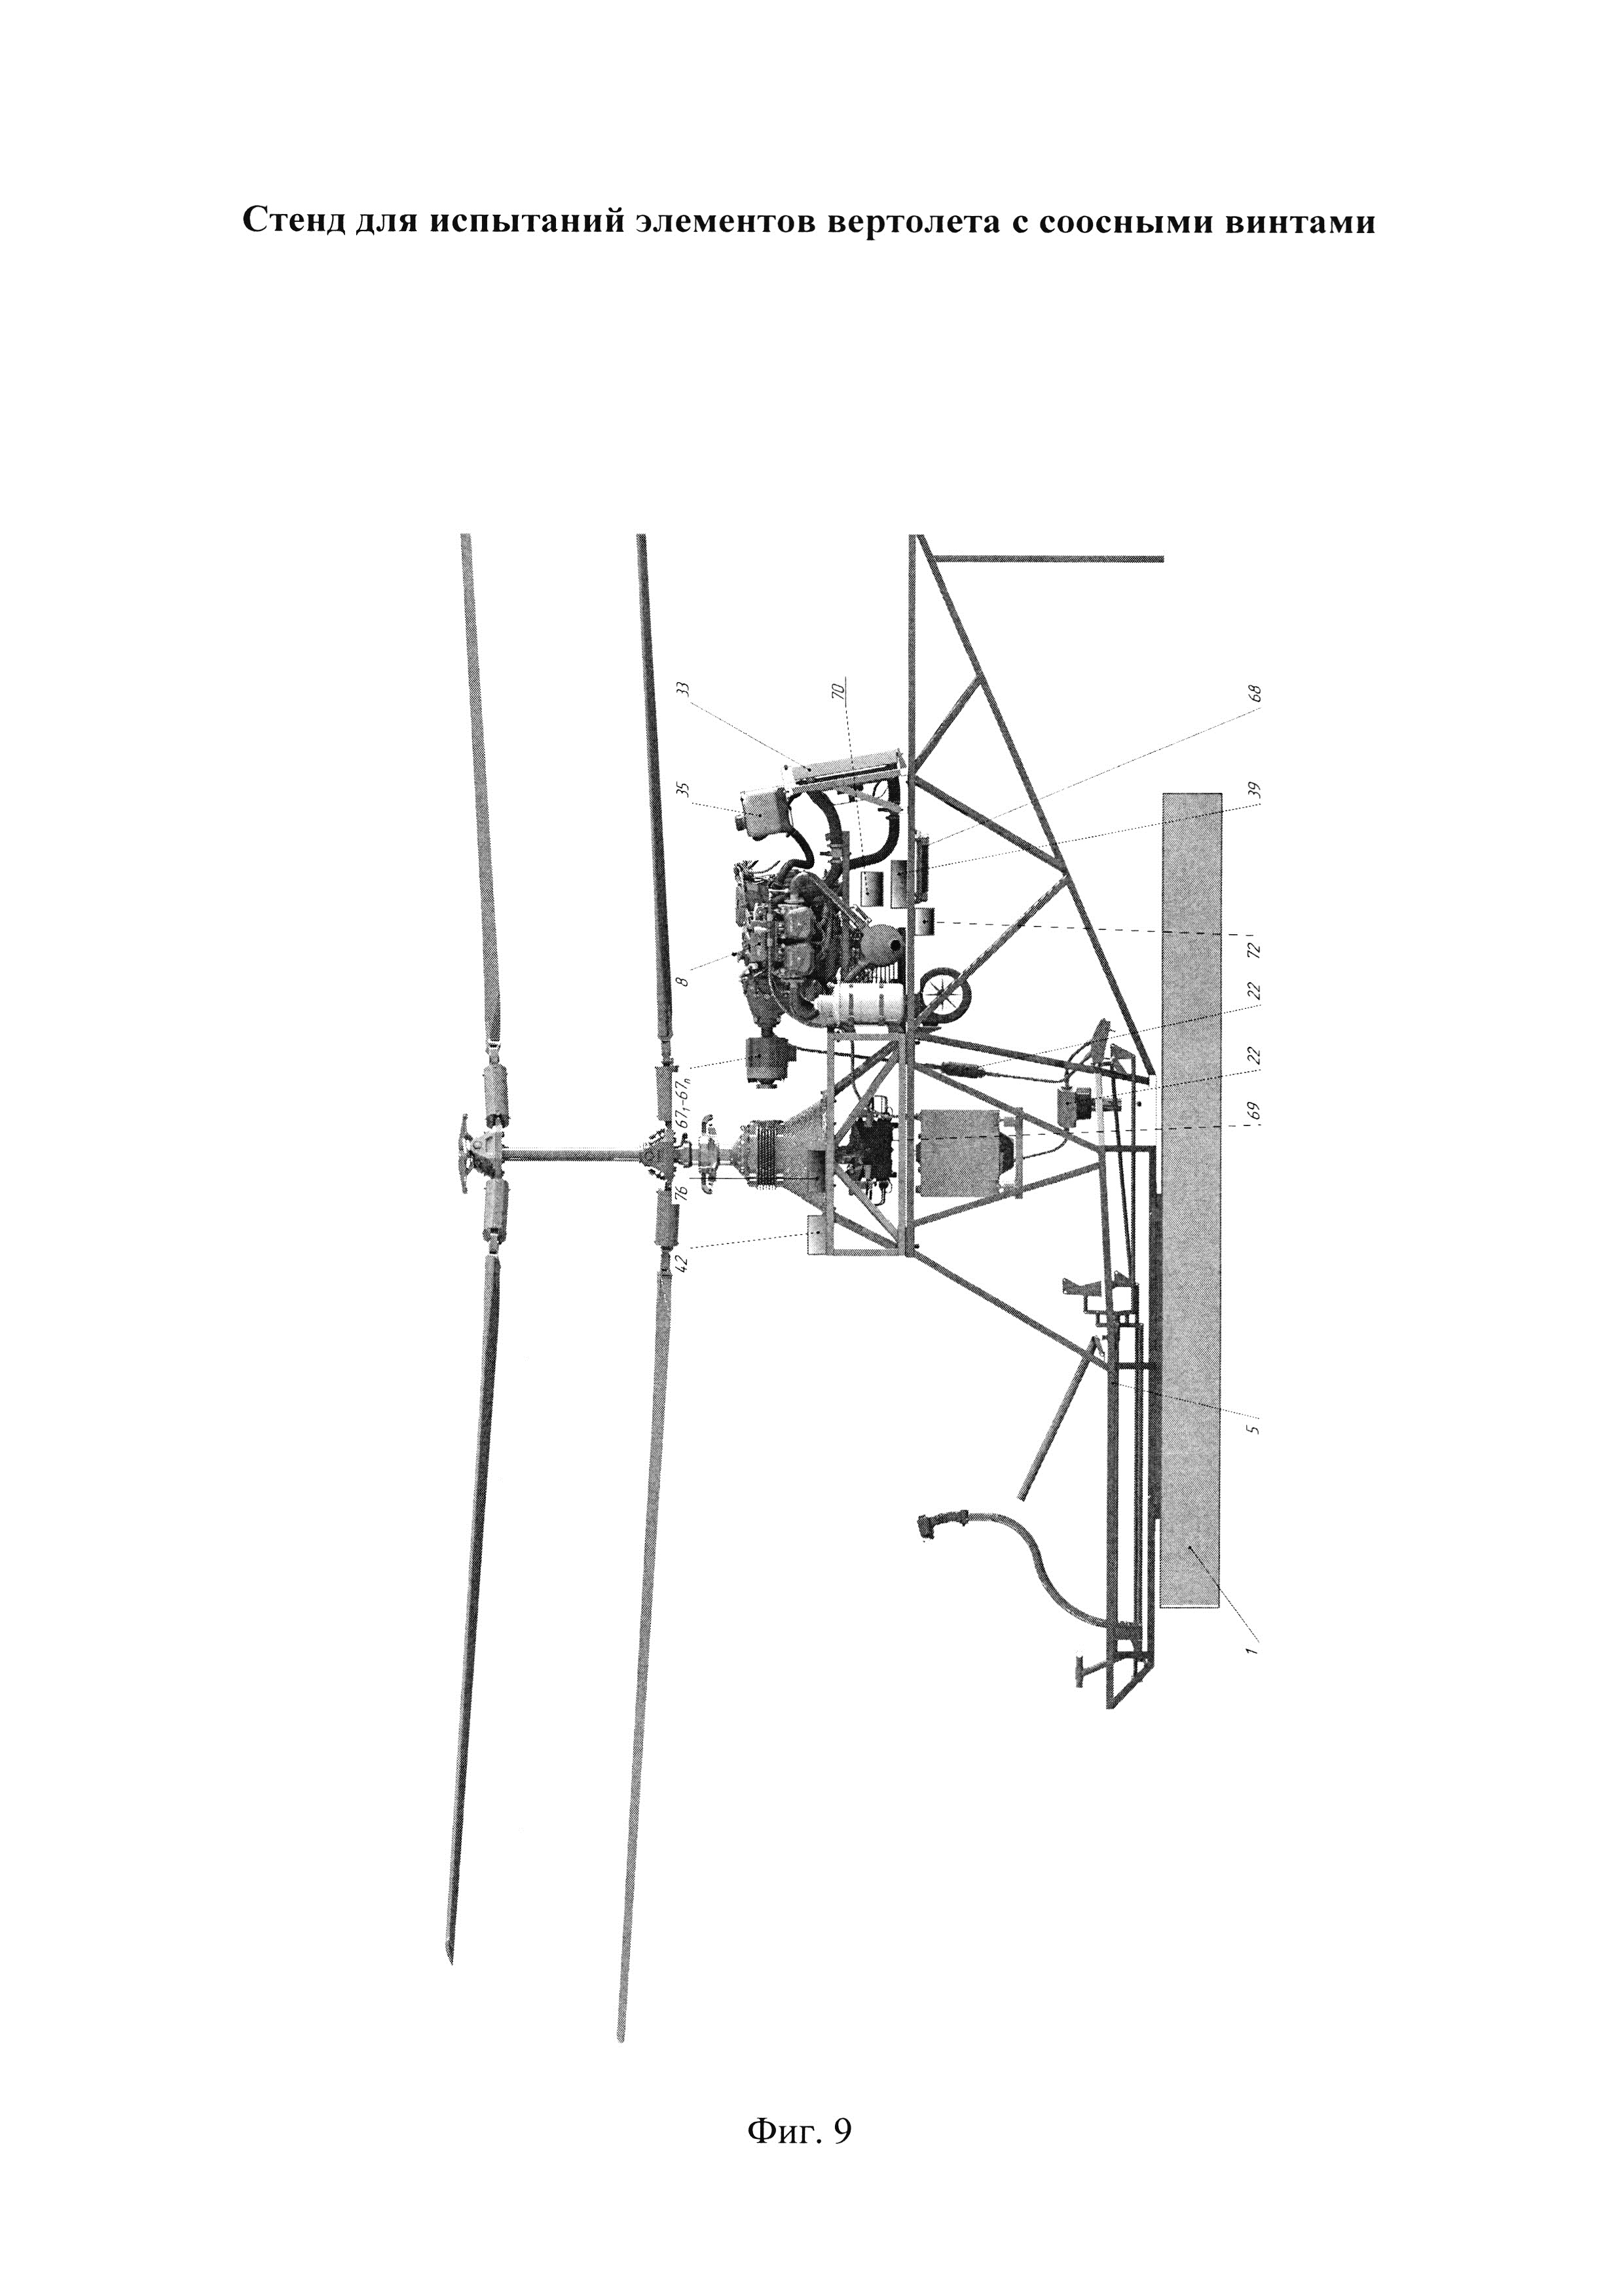 Стенд для испытаний элементов вертолета с соосными винтами